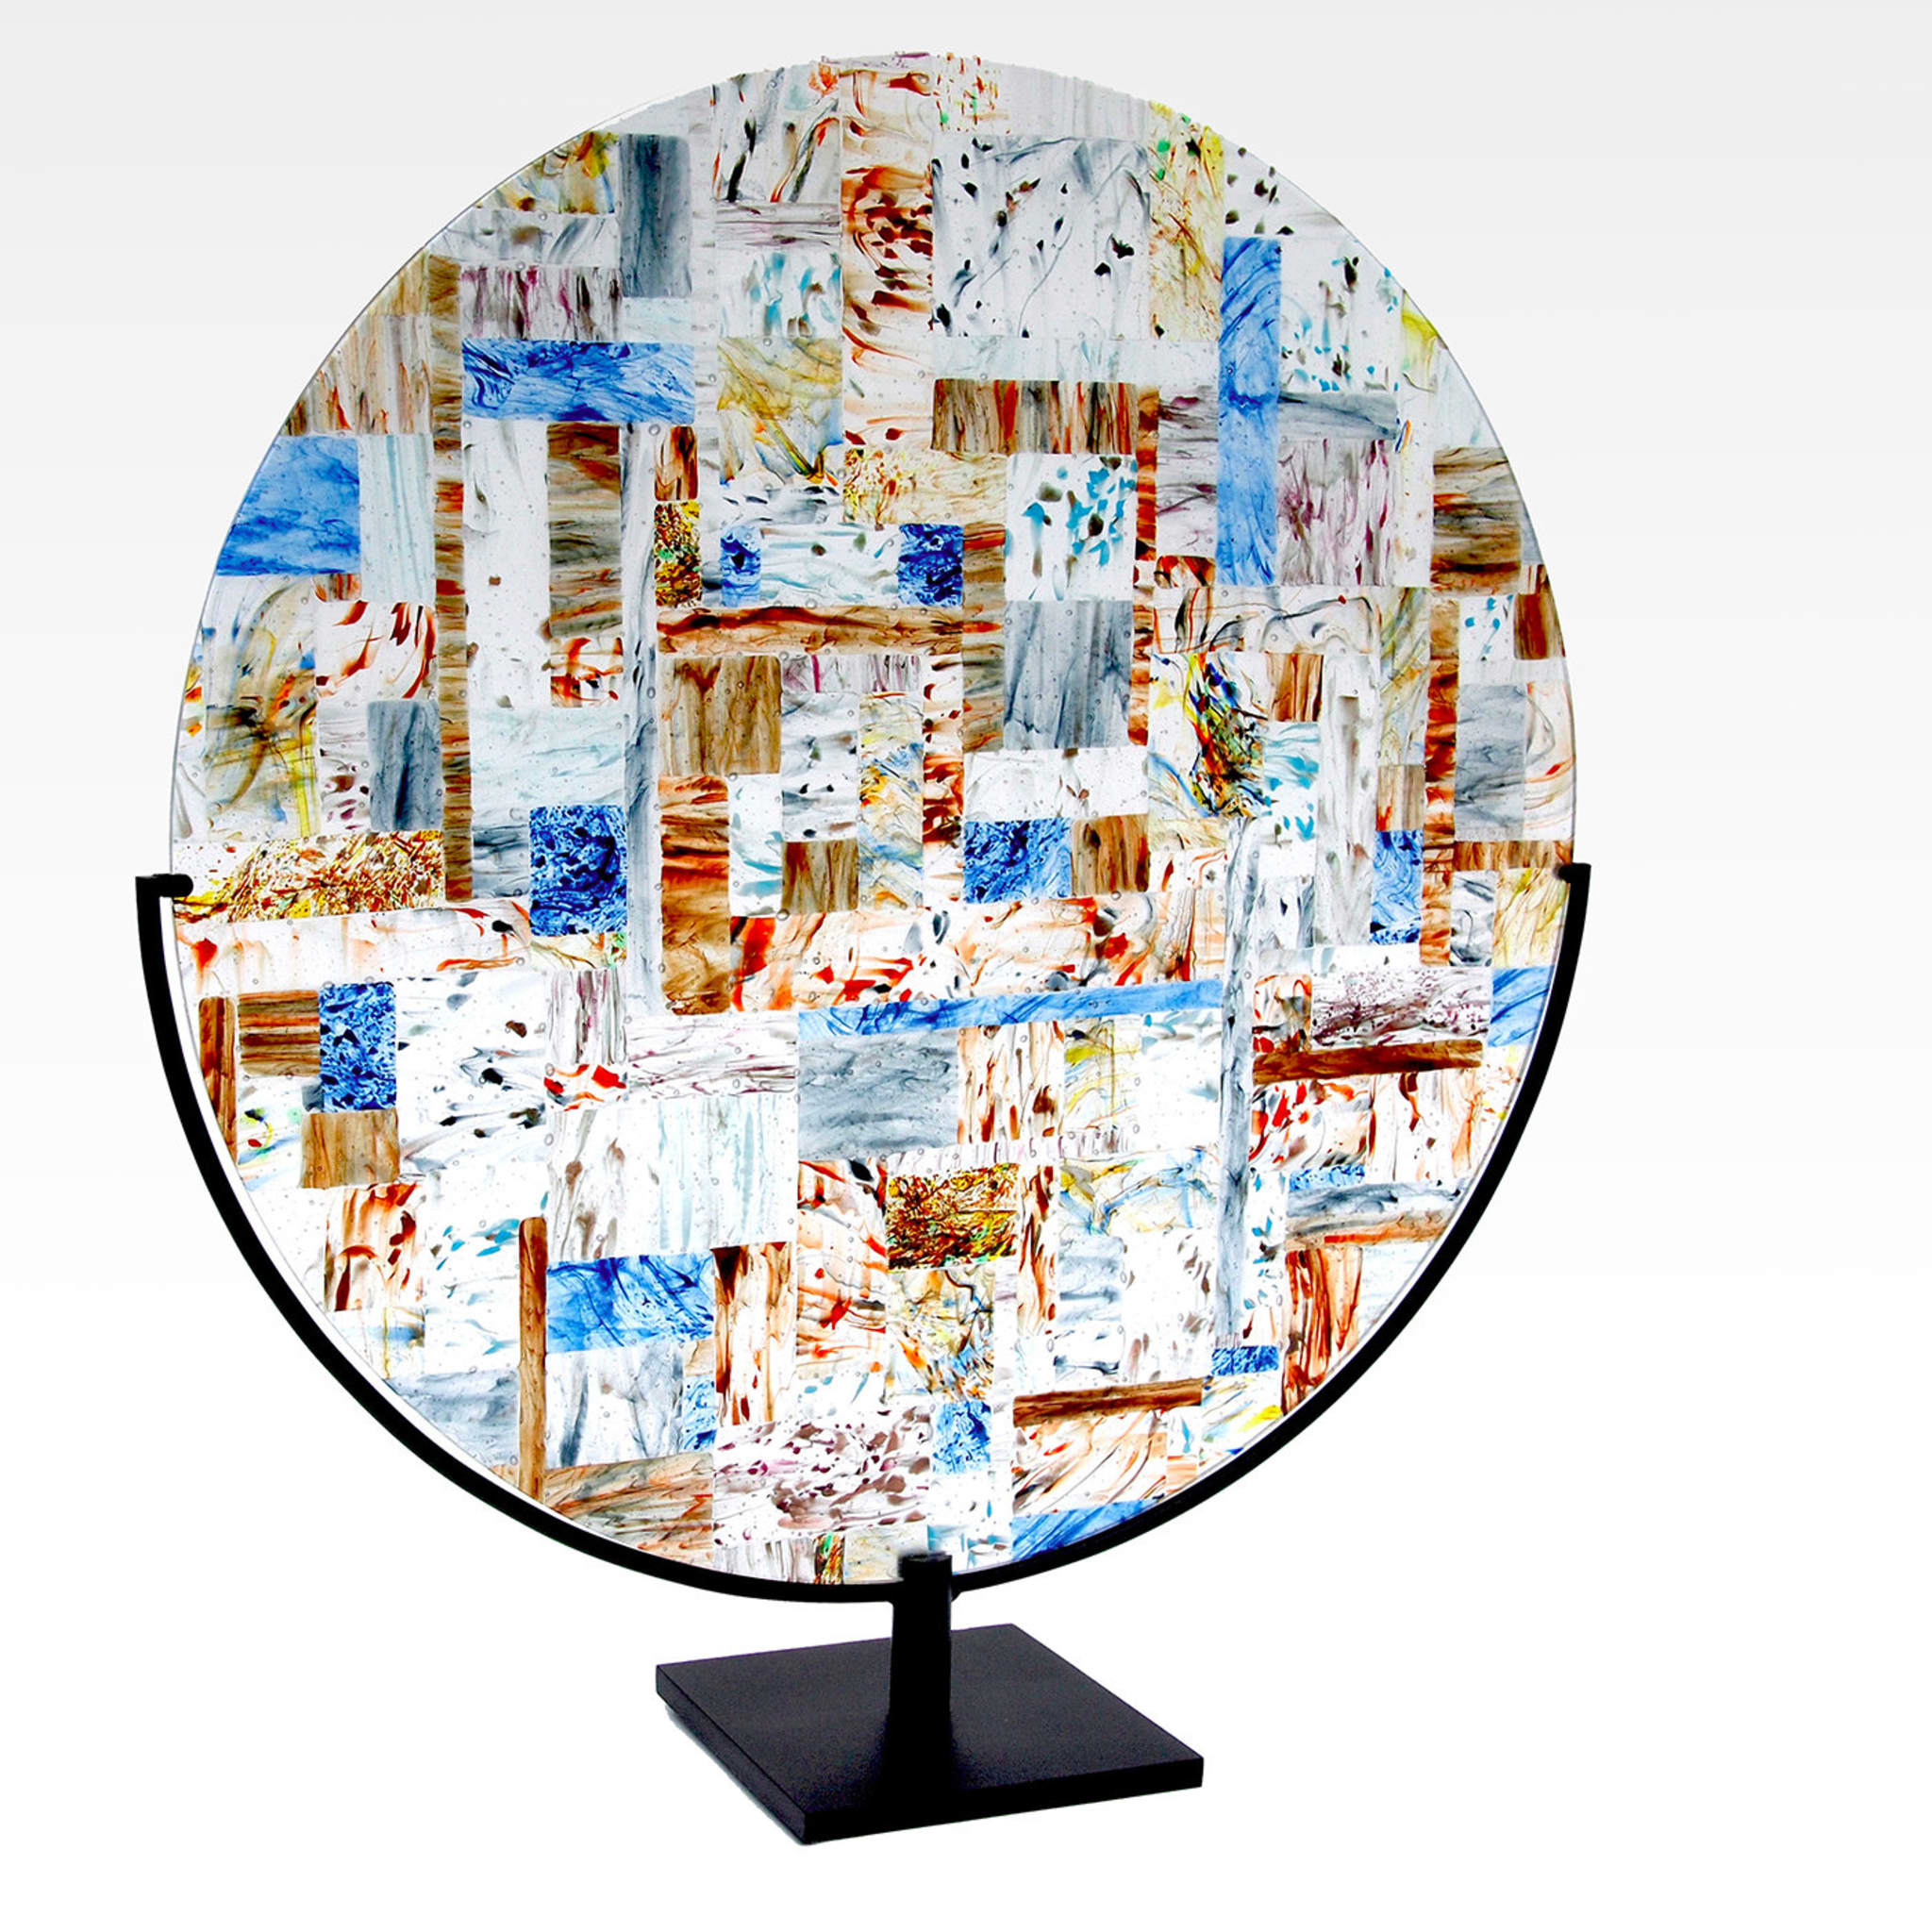 Araldo in Murano Glass Disc by Andrea Orso - Alternative view 1